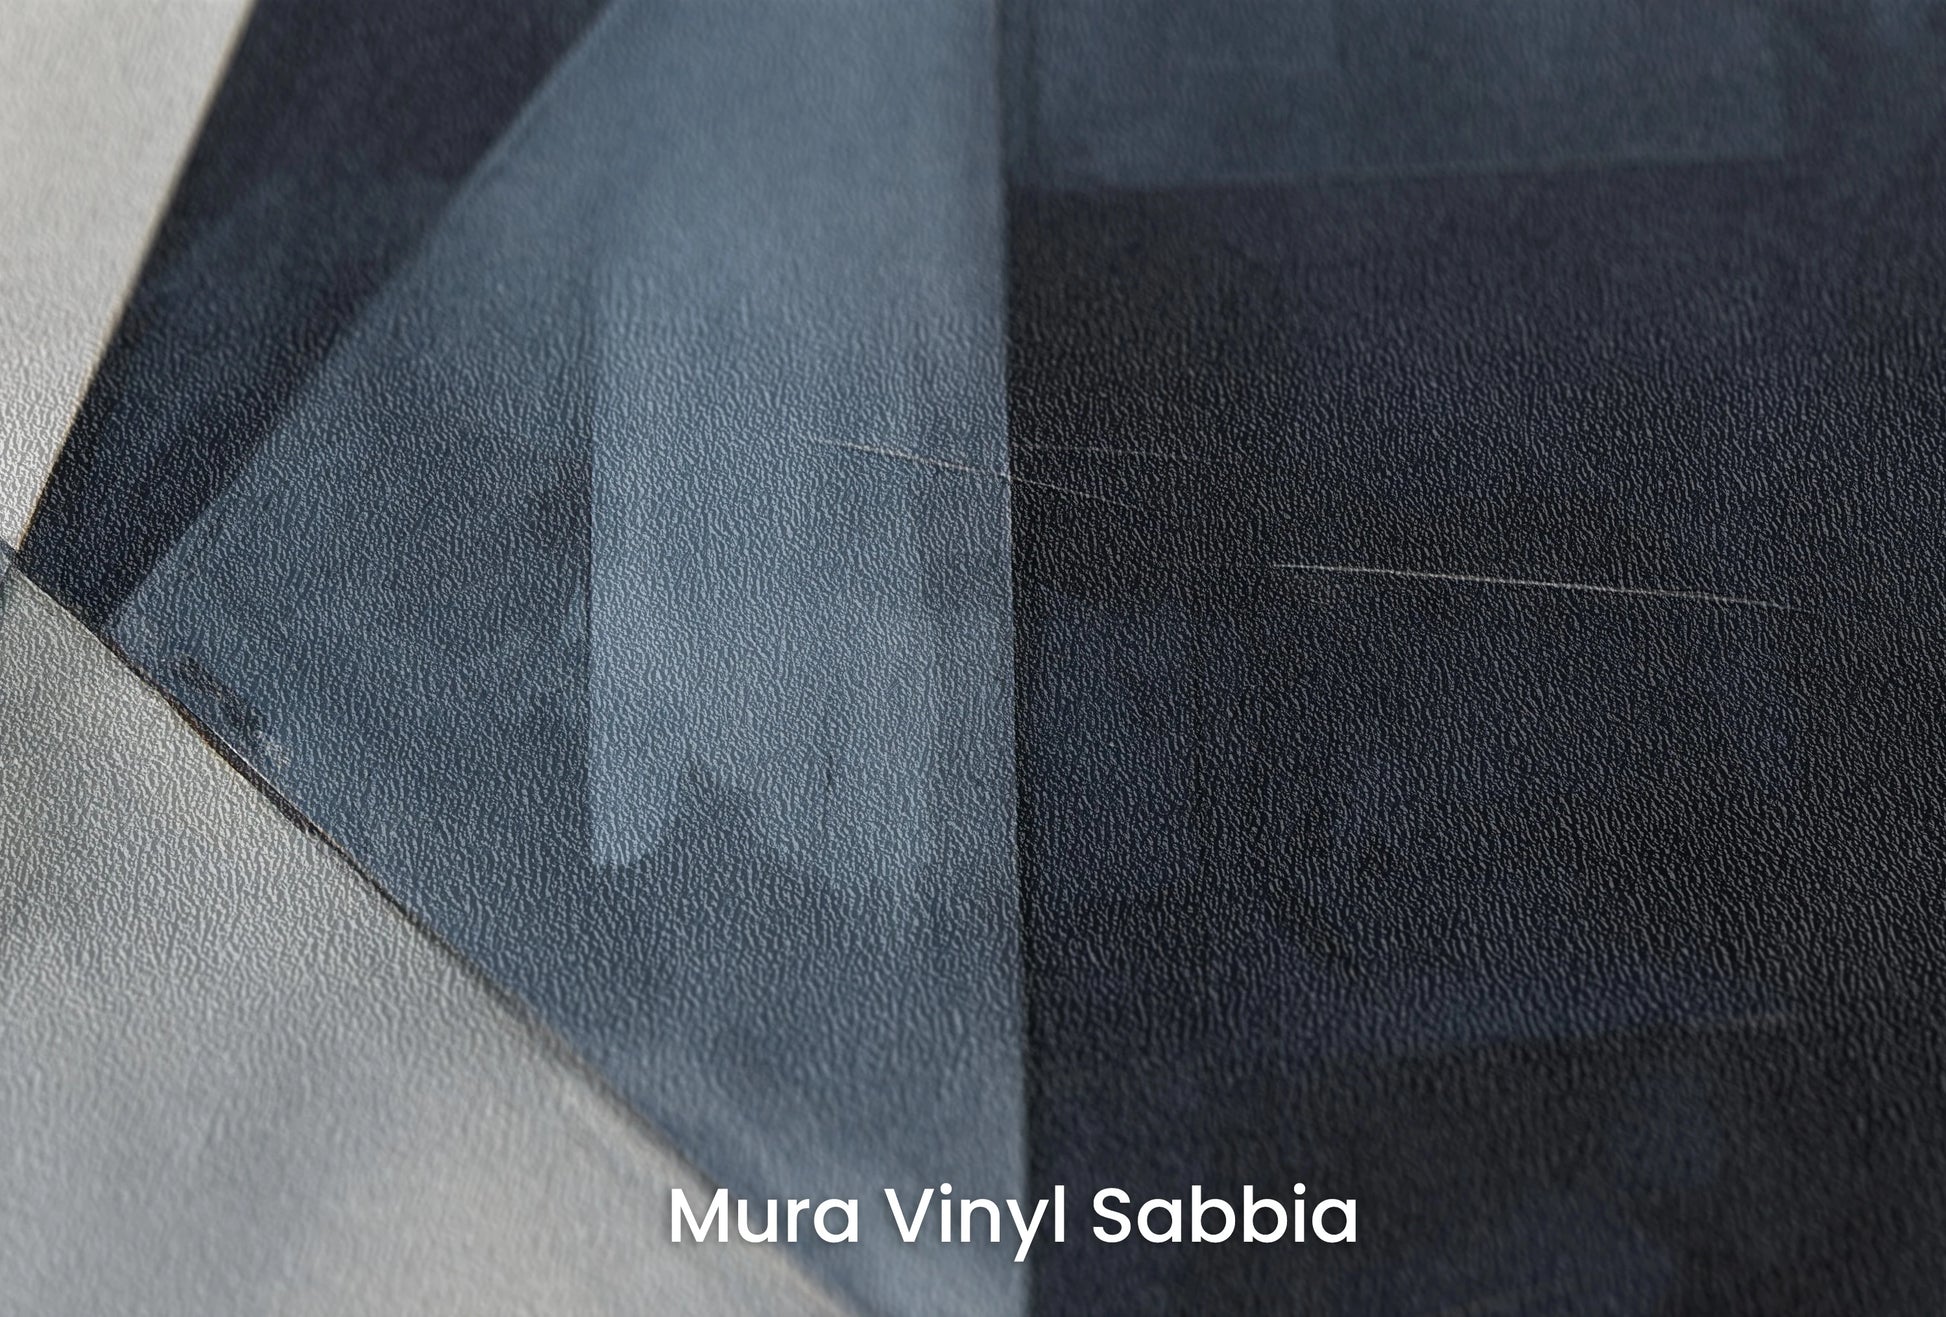 Zbliżenie na artystyczną fototapetę o nazwie Monochrome Motion na podłożu Mura Vinyl Sabbia struktura grubego ziarna piasku.